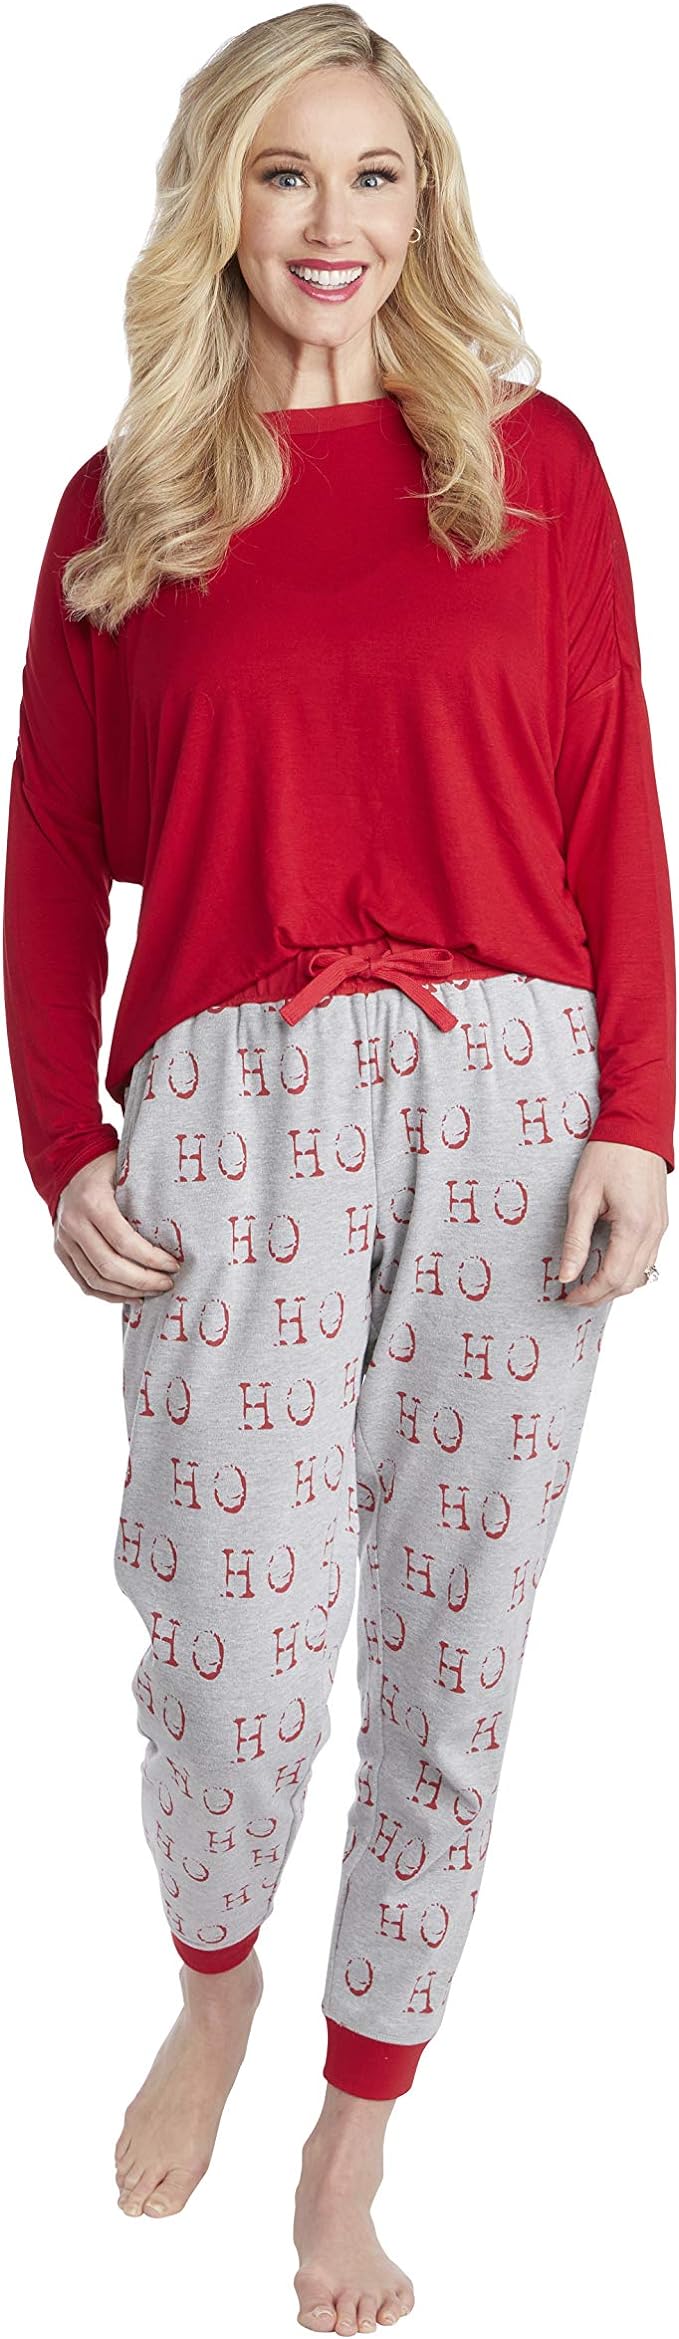 Mudpie Women’s Matching Pajama Set- HoHoHo